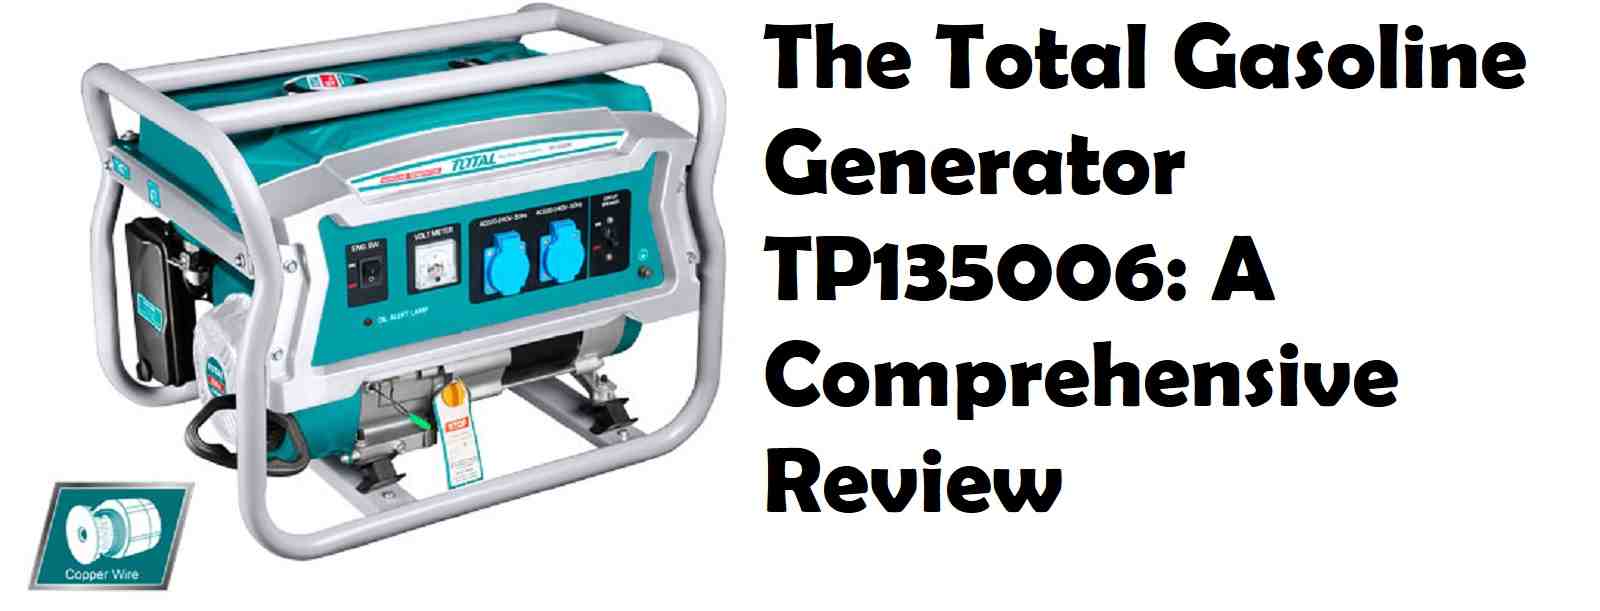 Gasoline Generator TP135006